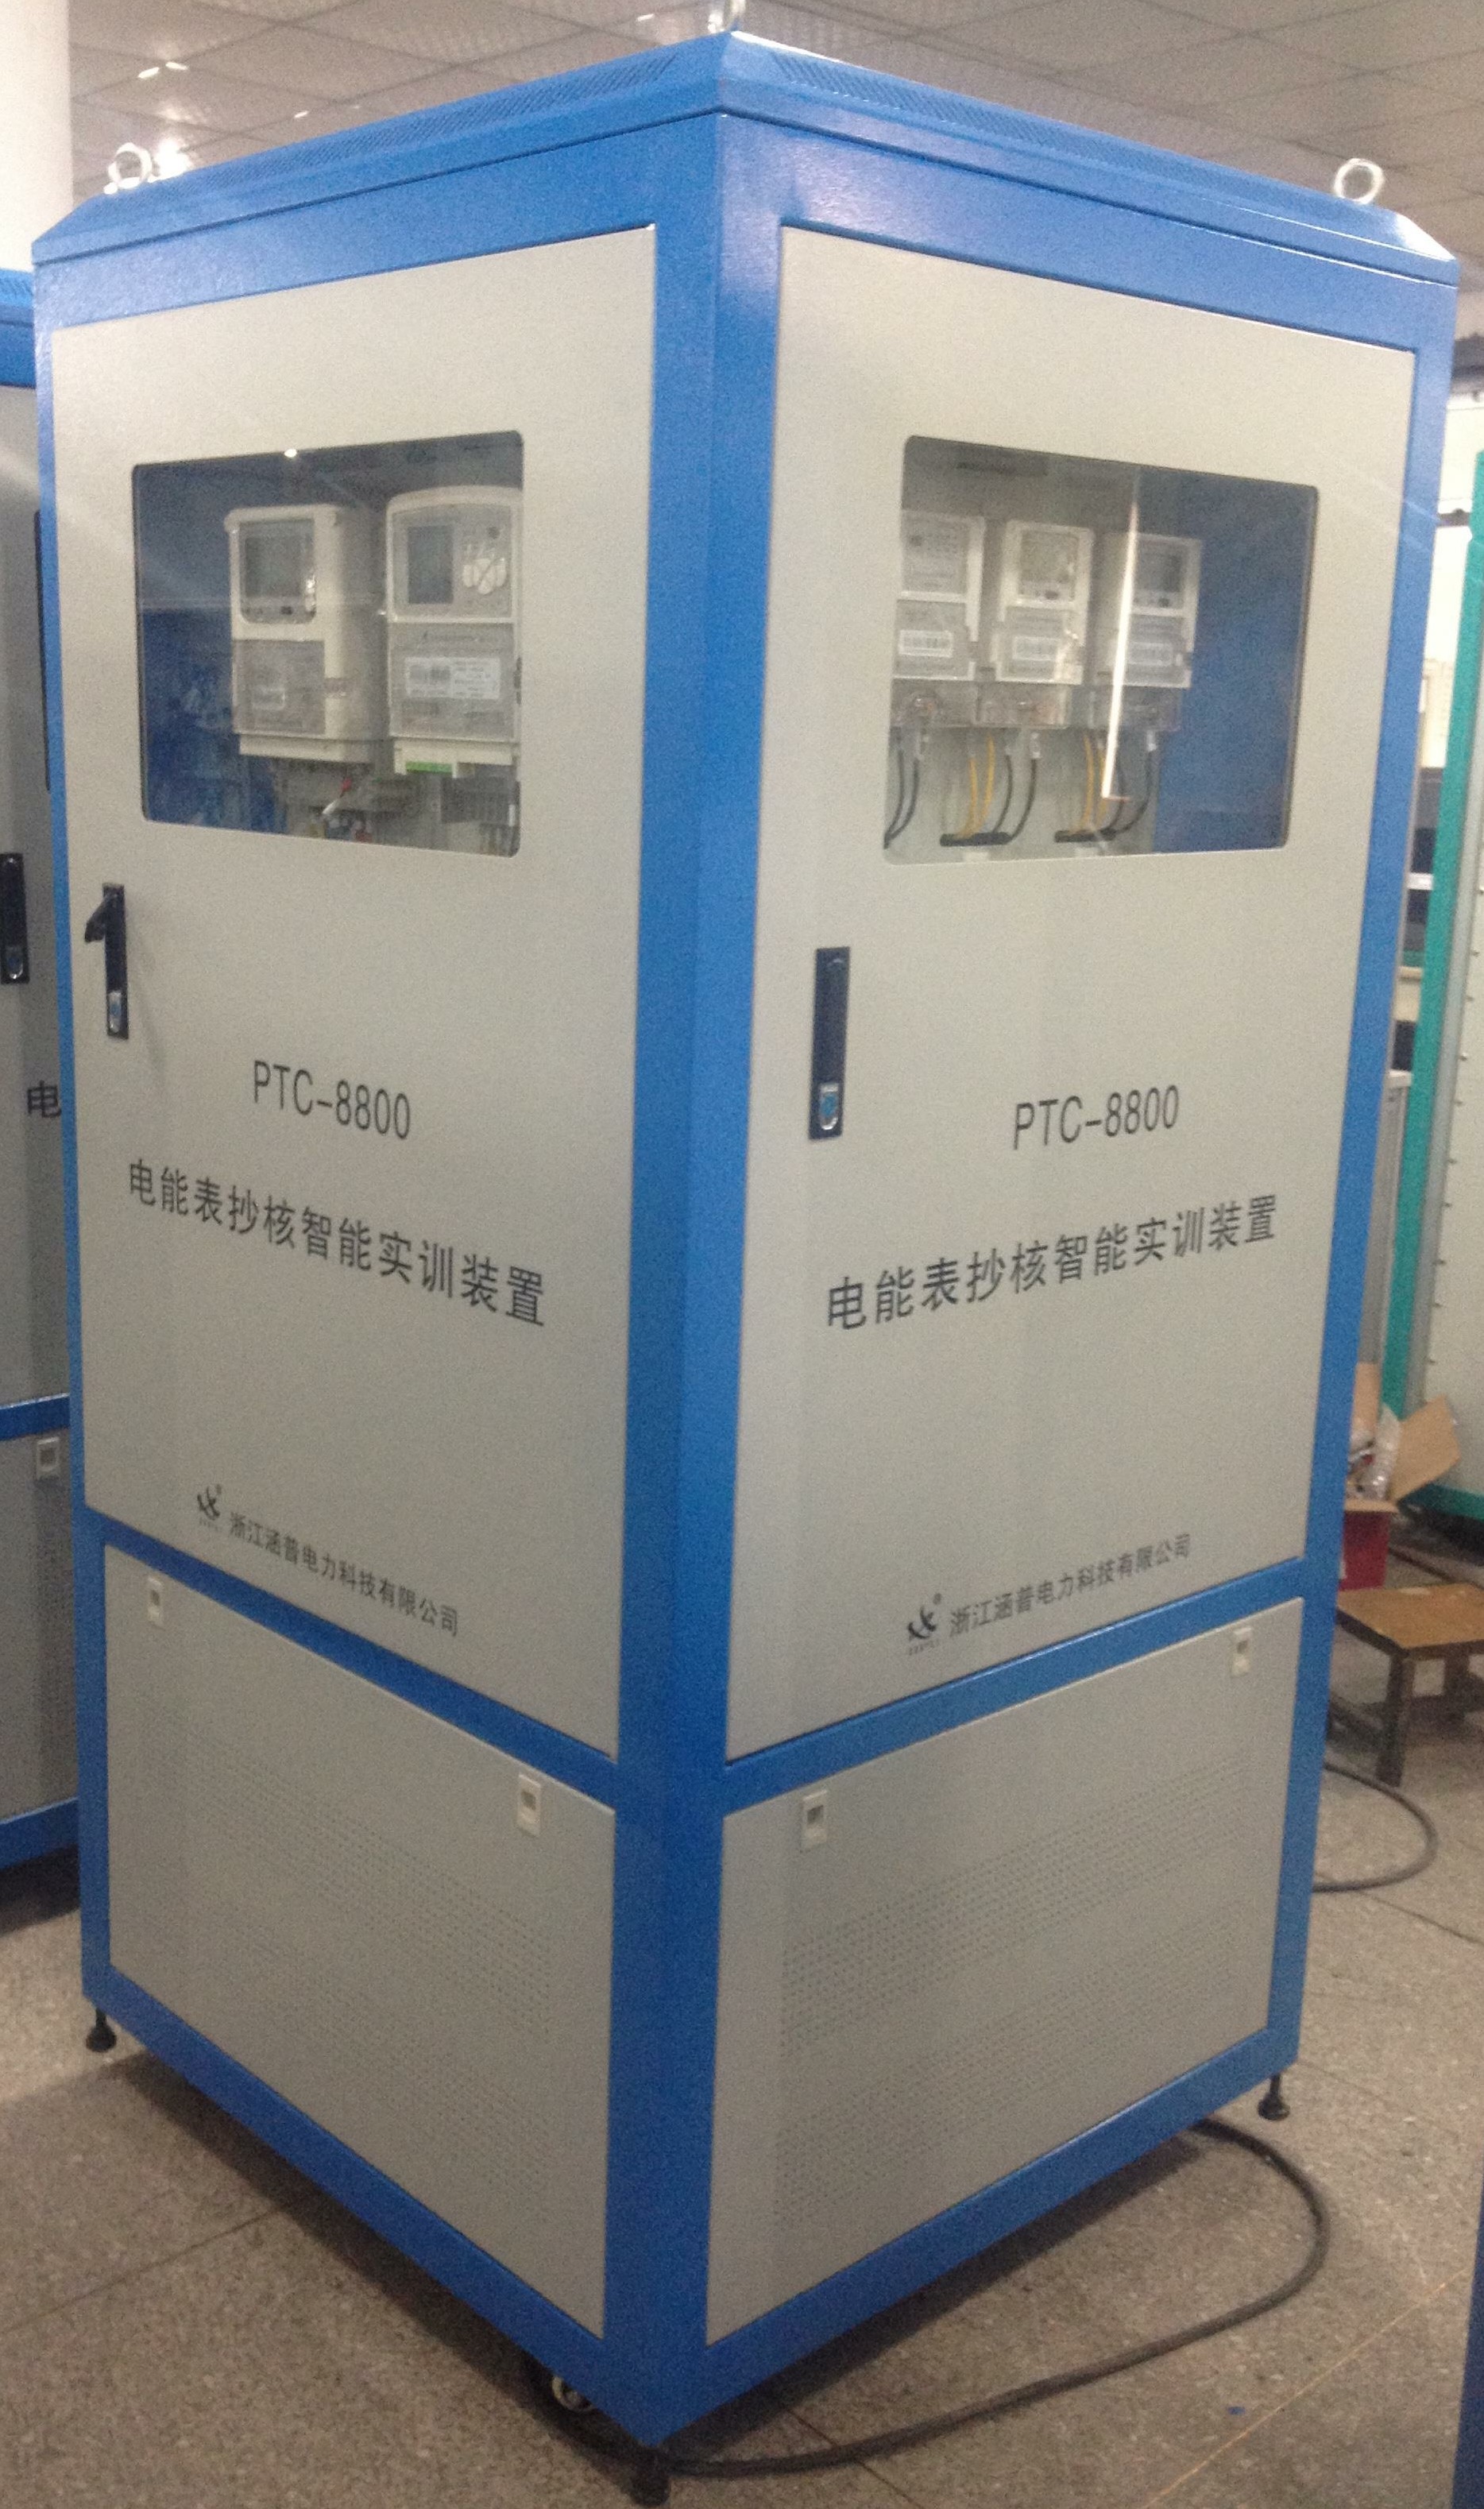 PTC-8800-CH 抄核收实训装置